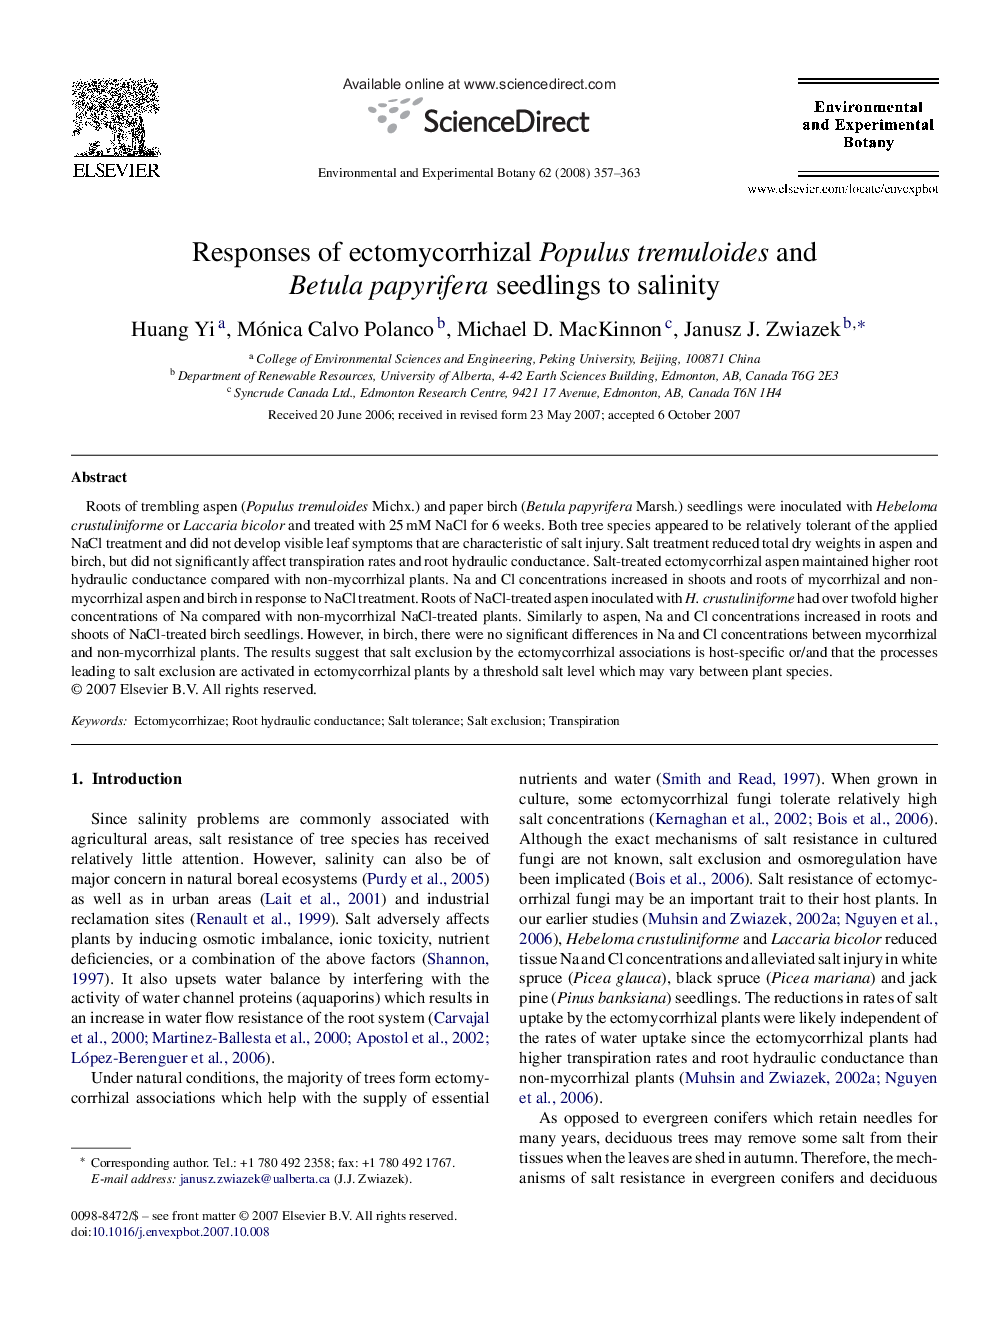 Responses of ectomycorrhizal Populus tremuloides and Betula papyrifera seedlings to salinity